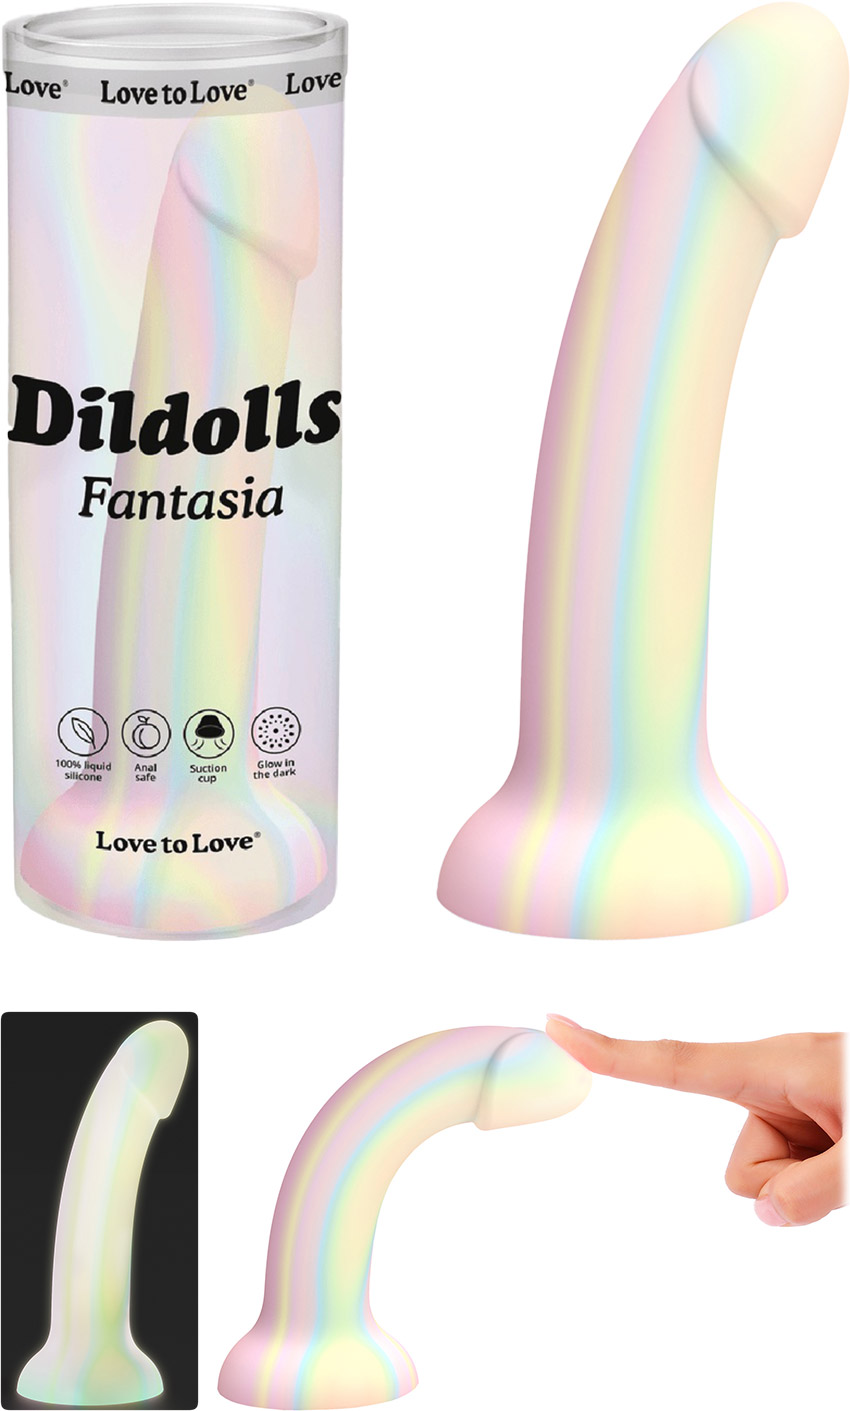 Dildo Love to Love Dildolls Fantasia - 16 cm - Phosphorescent